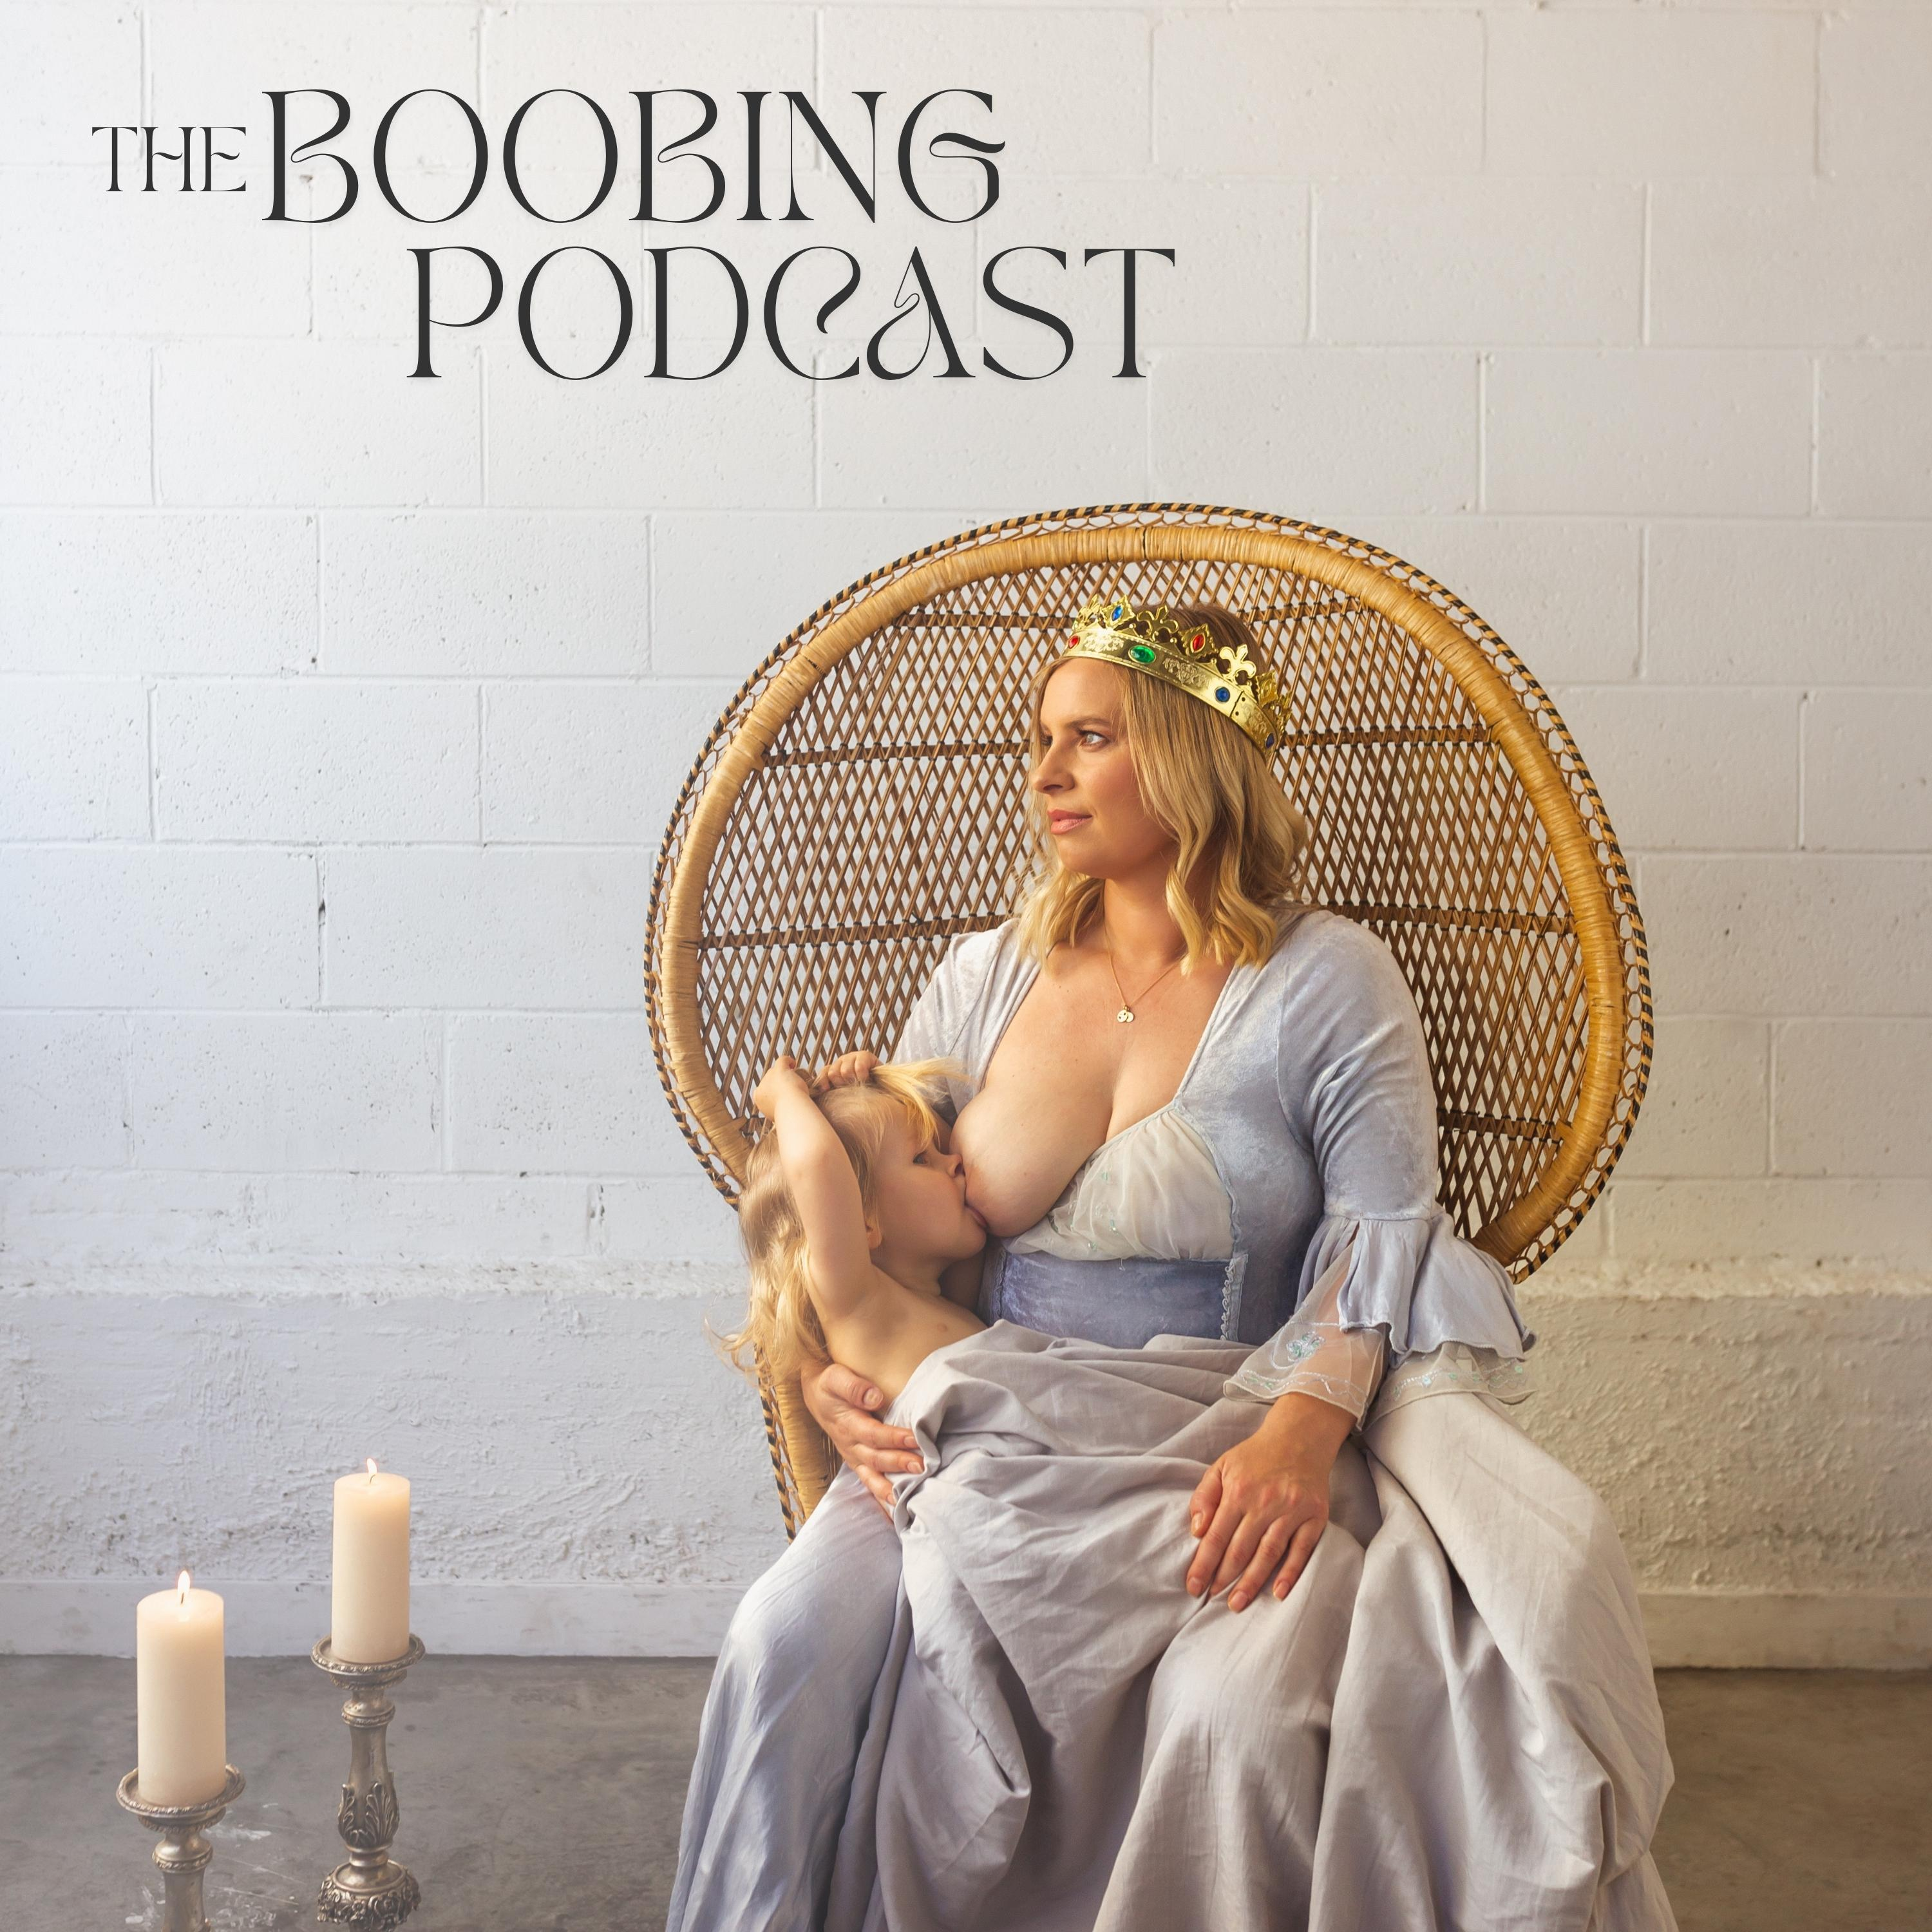 The Boobing Podcast - Episode 5 - Rach Waia - Part 2 - Tiny Hearts Education